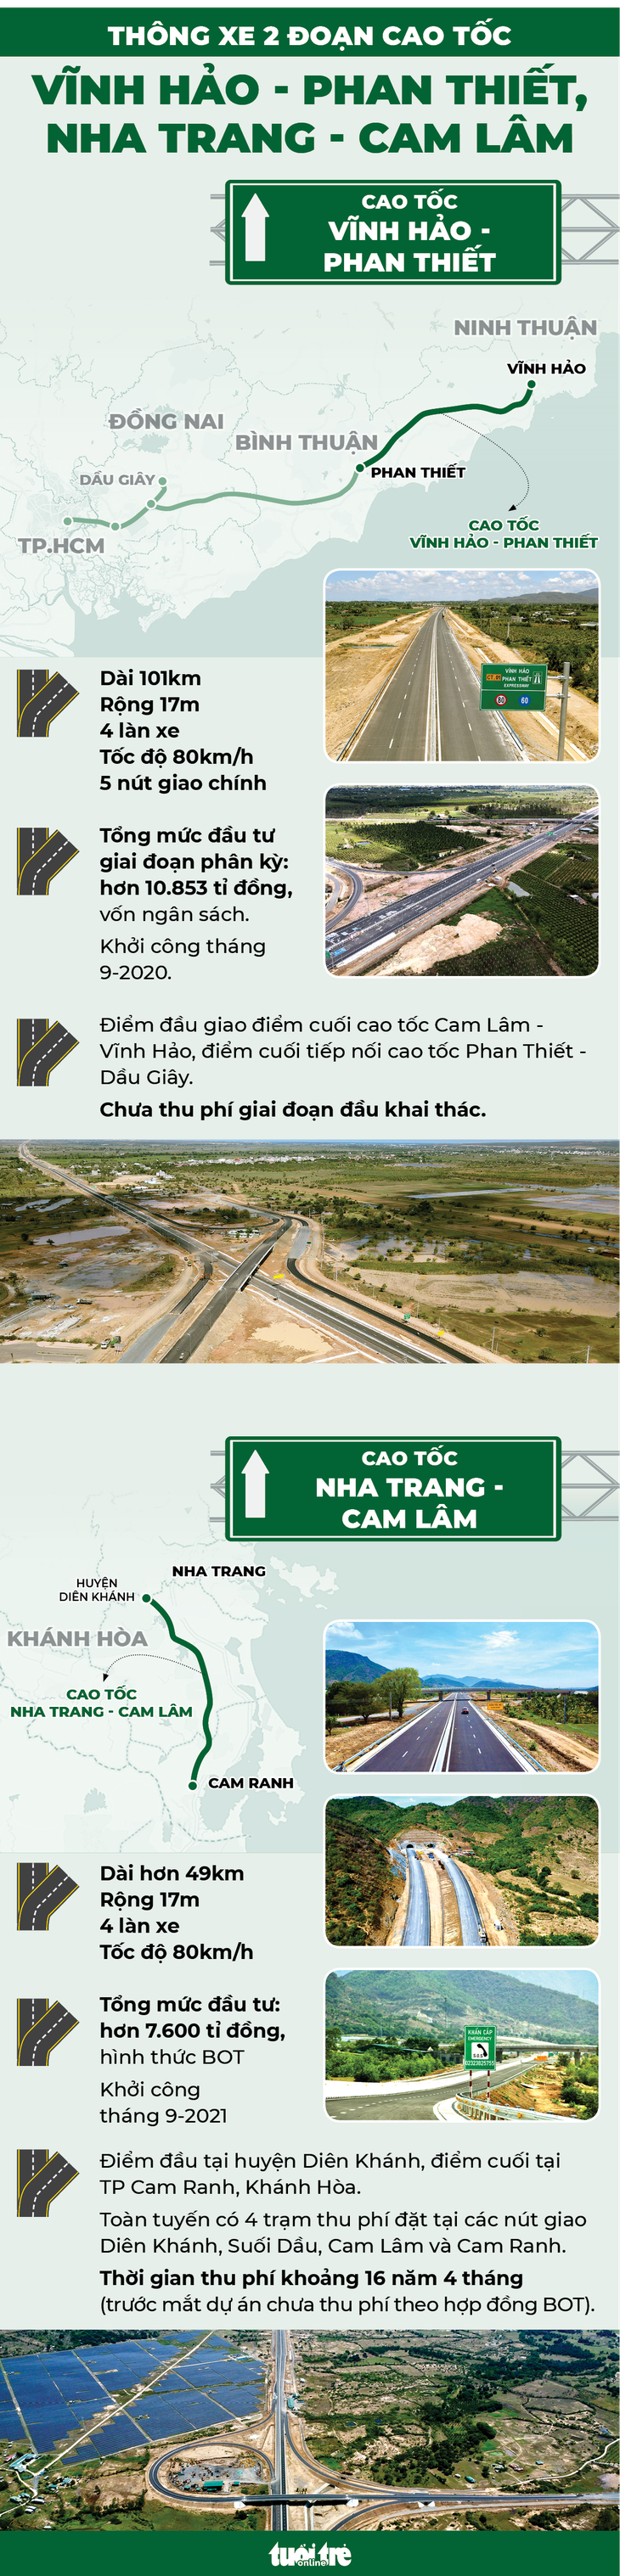 Xe chạy ổn trên cao tốc Vĩnh Hảo - Phan Thiết, không có chuyện đóng lại làm tiếp - Ảnh 3.